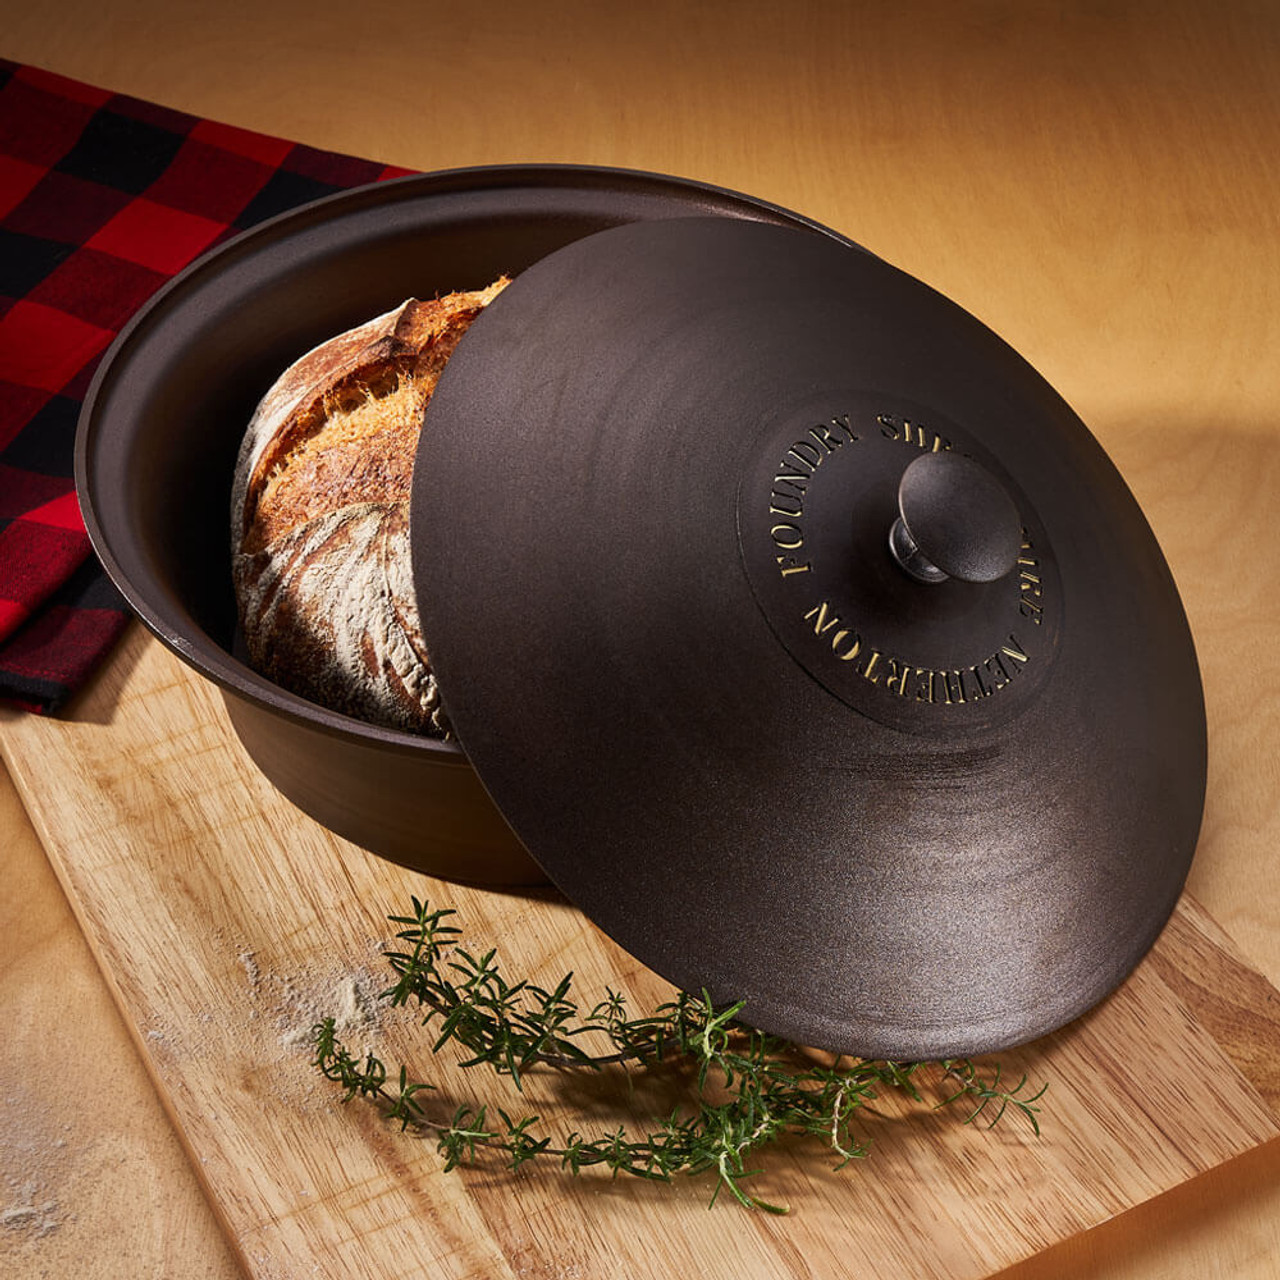 Netherton Loaf Baking Pan - Spun Iron